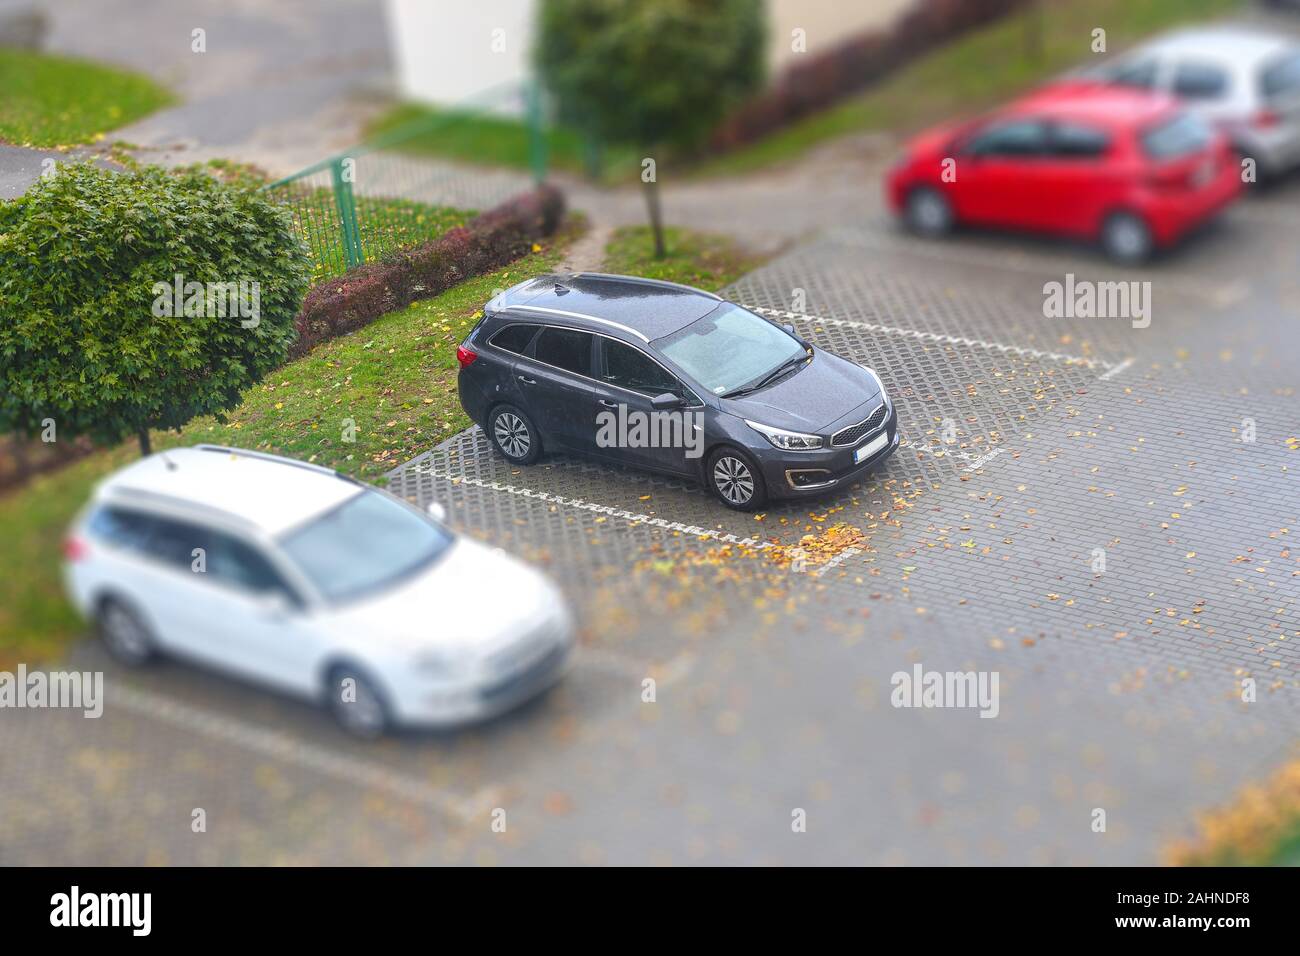 Piccolo parcheggio con diverse auto visto da sopra con tilt shift effetto Foto Stock